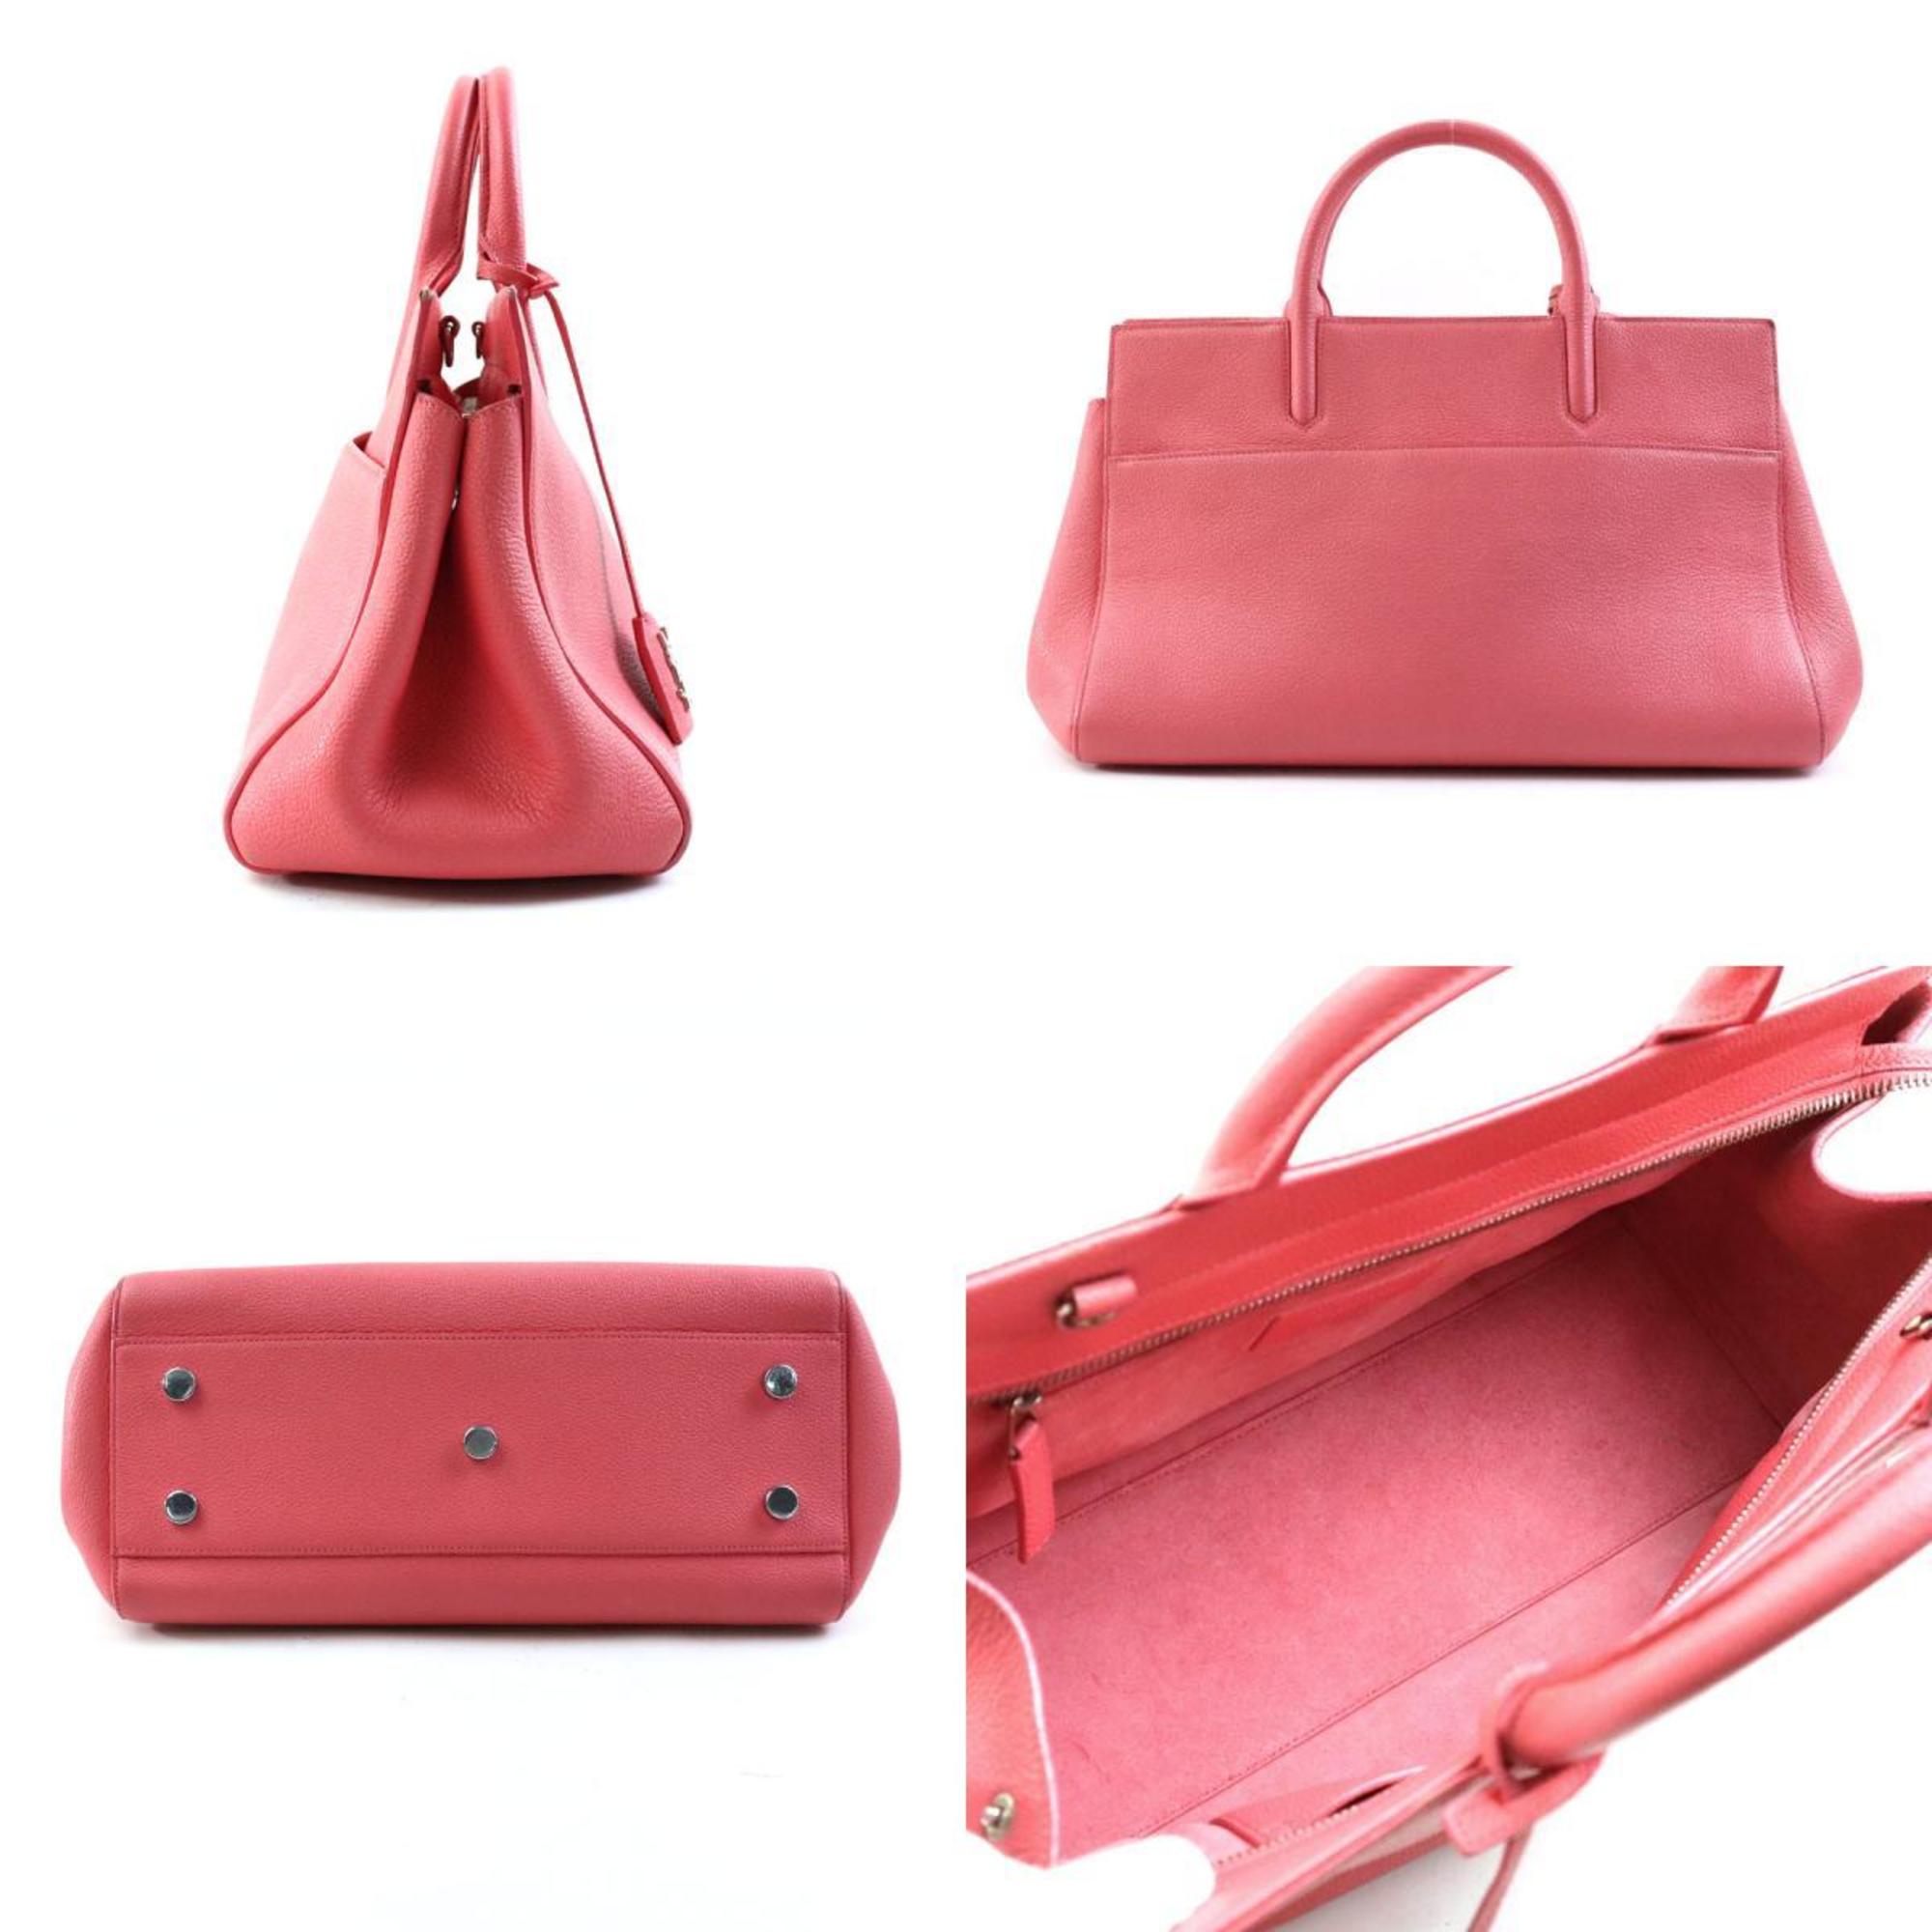 Saint Laurent SAINT LAURENT handbag shoulder bag Cavalive Gauche leather pink silver women's e58622a